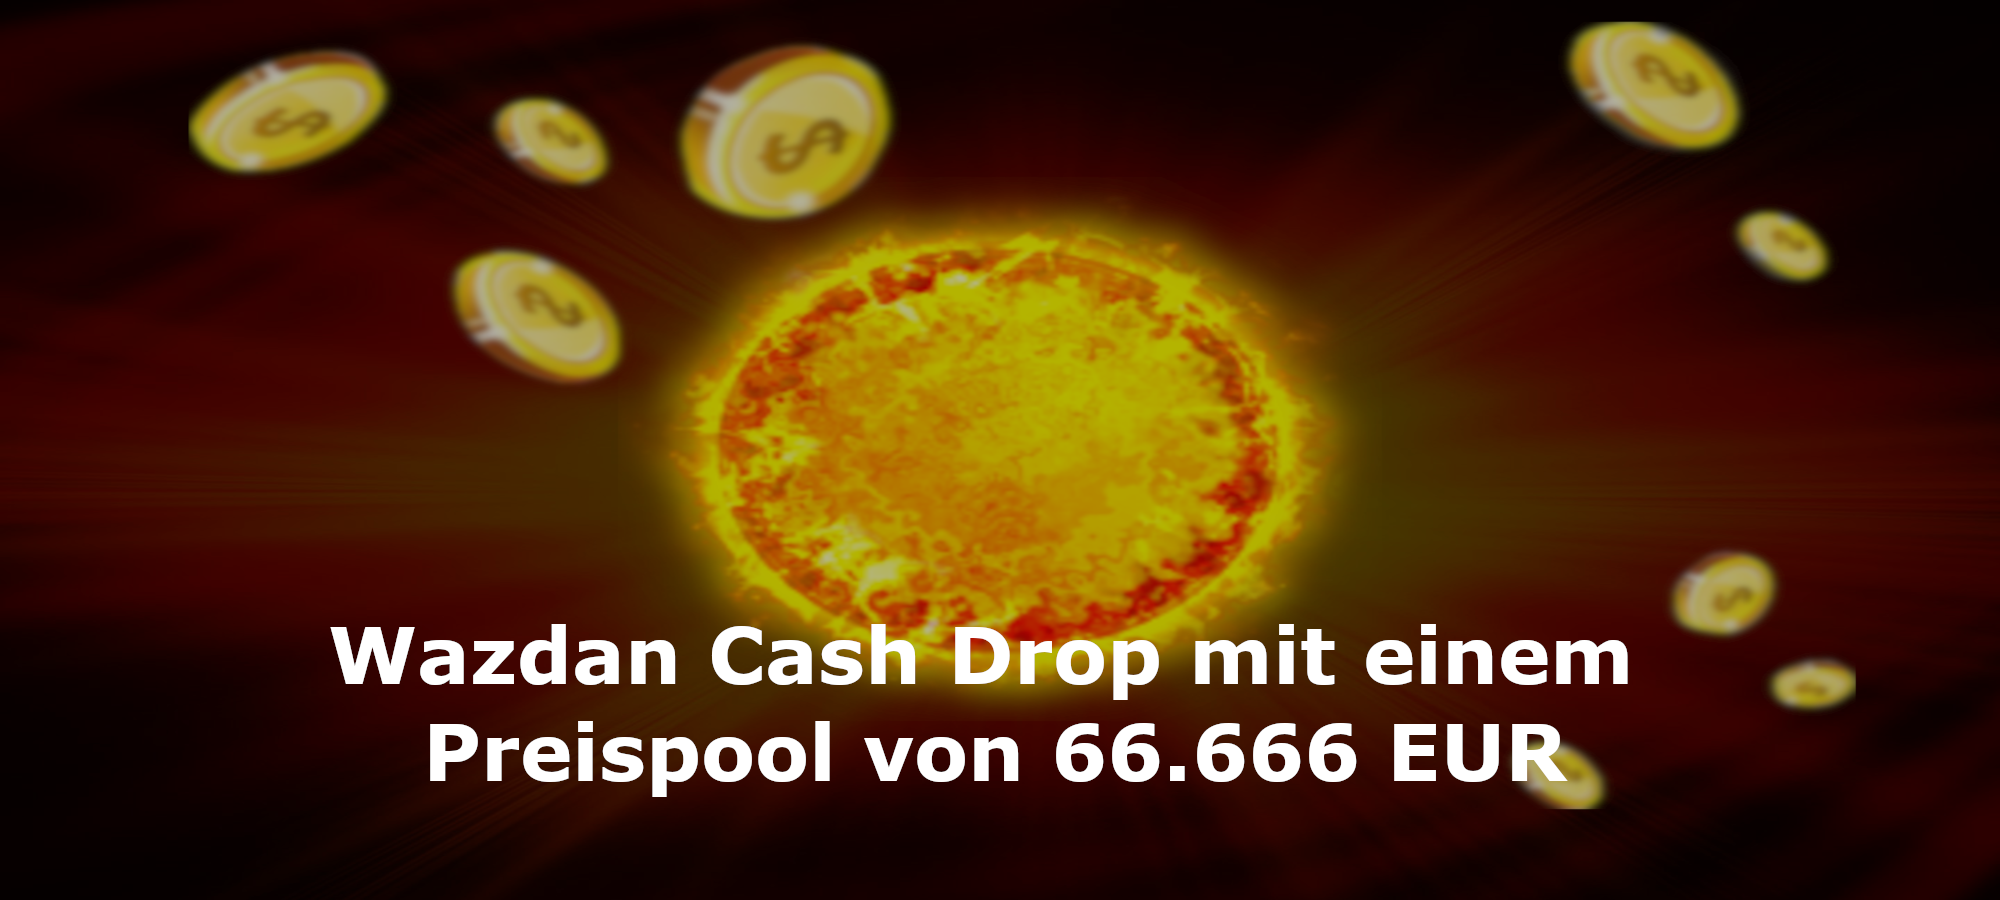 Wazdan Cash Drop mit einem Preispool von 66.666 EUR